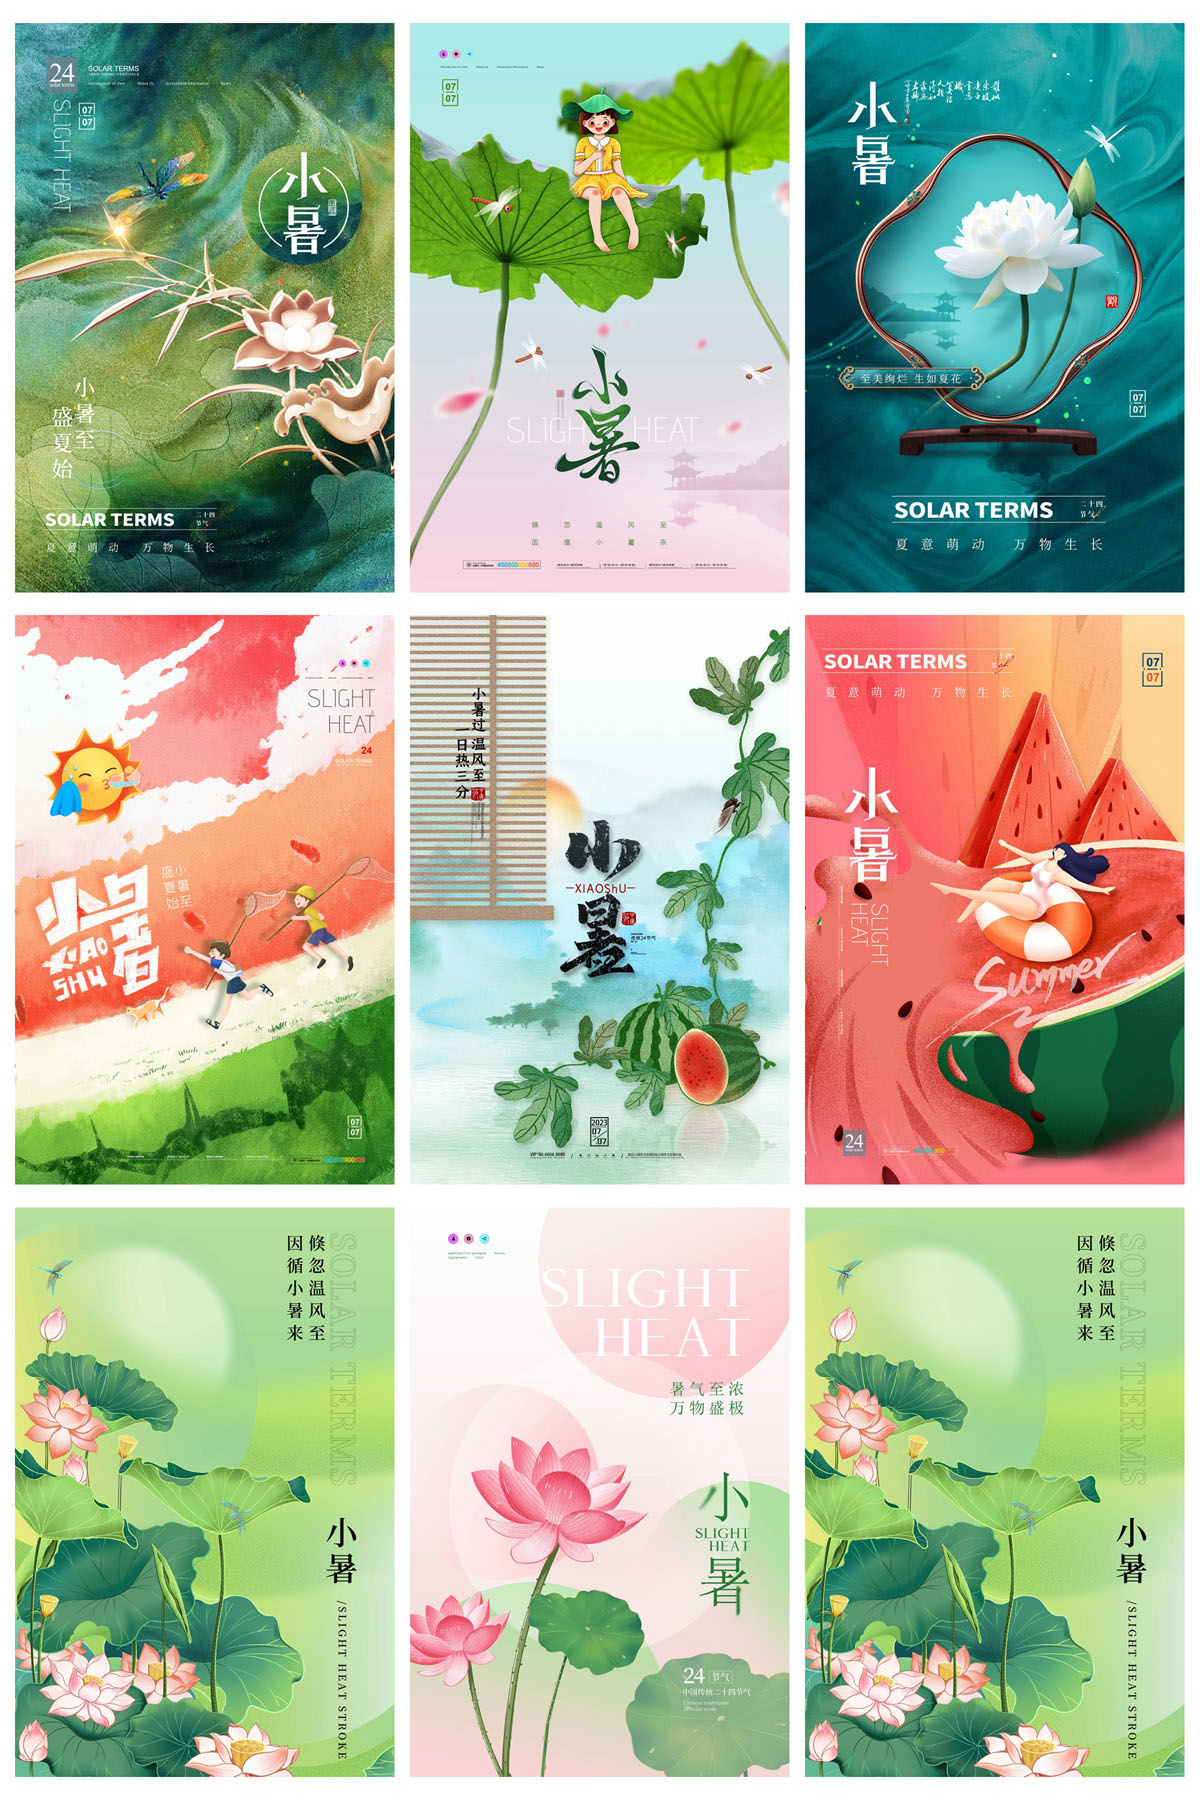 93款中国风24节气小暑宣传海报PSD模板 设计素材 第16张